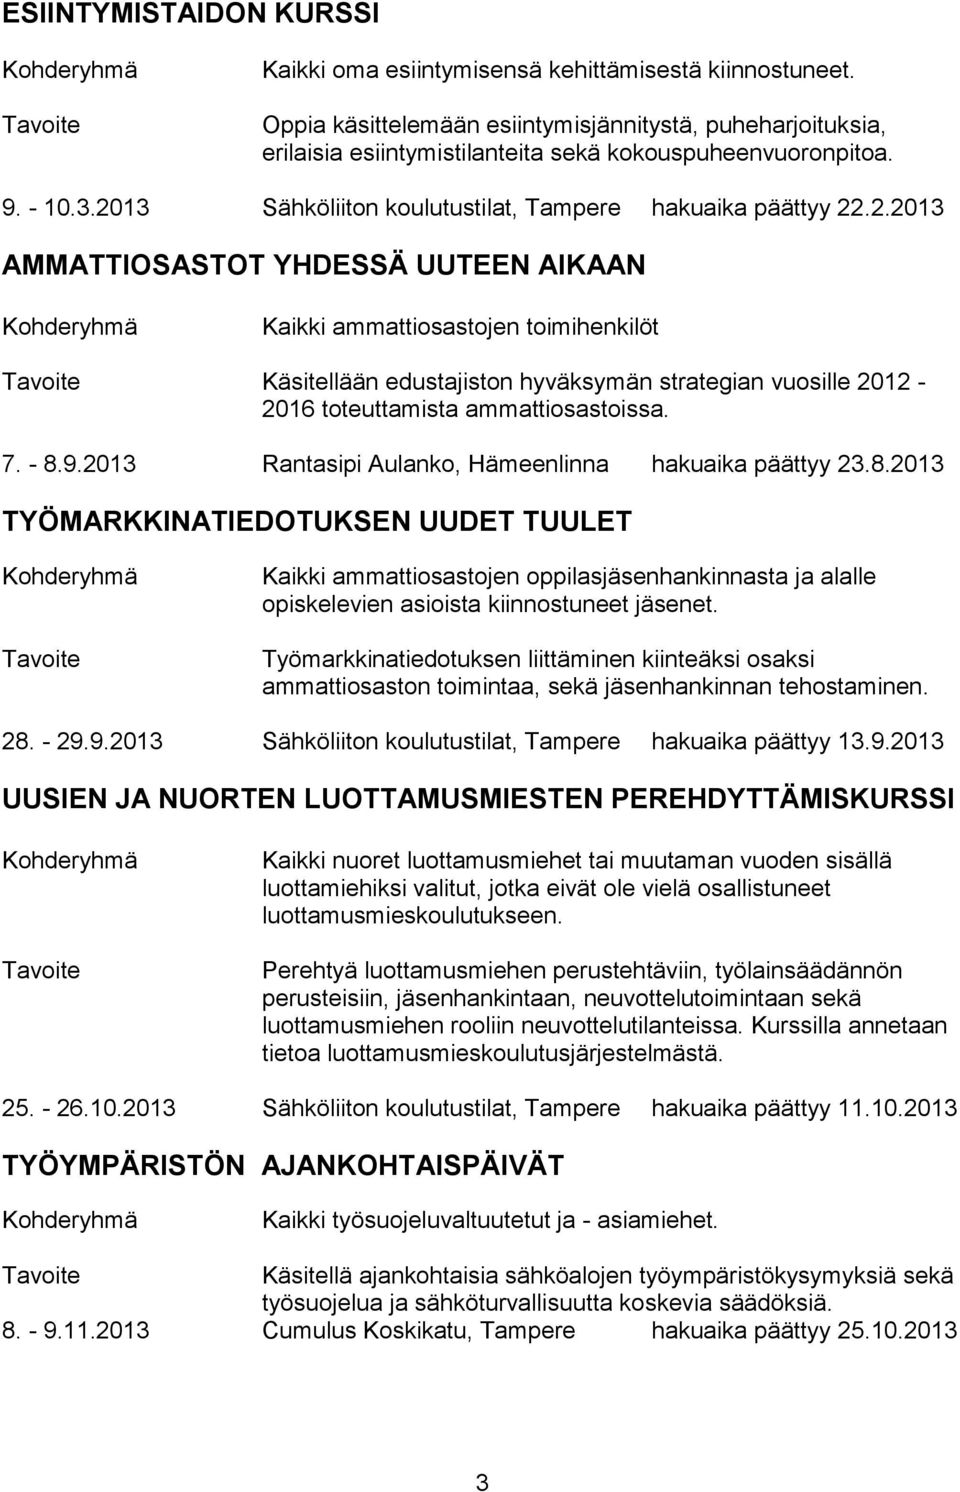 7. - 8.9.2013 Rantasipi Aulanko, Hämeenlinna hakuaika päättyy 23.8.2013 TYÖMARKKINATIEDOTUKSEN UUDET TUULET Kaikki ammattiosastojen oppilasjäsenhankinnasta ja alalle opiskelevien asioista kiinnostuneet jäsenet.